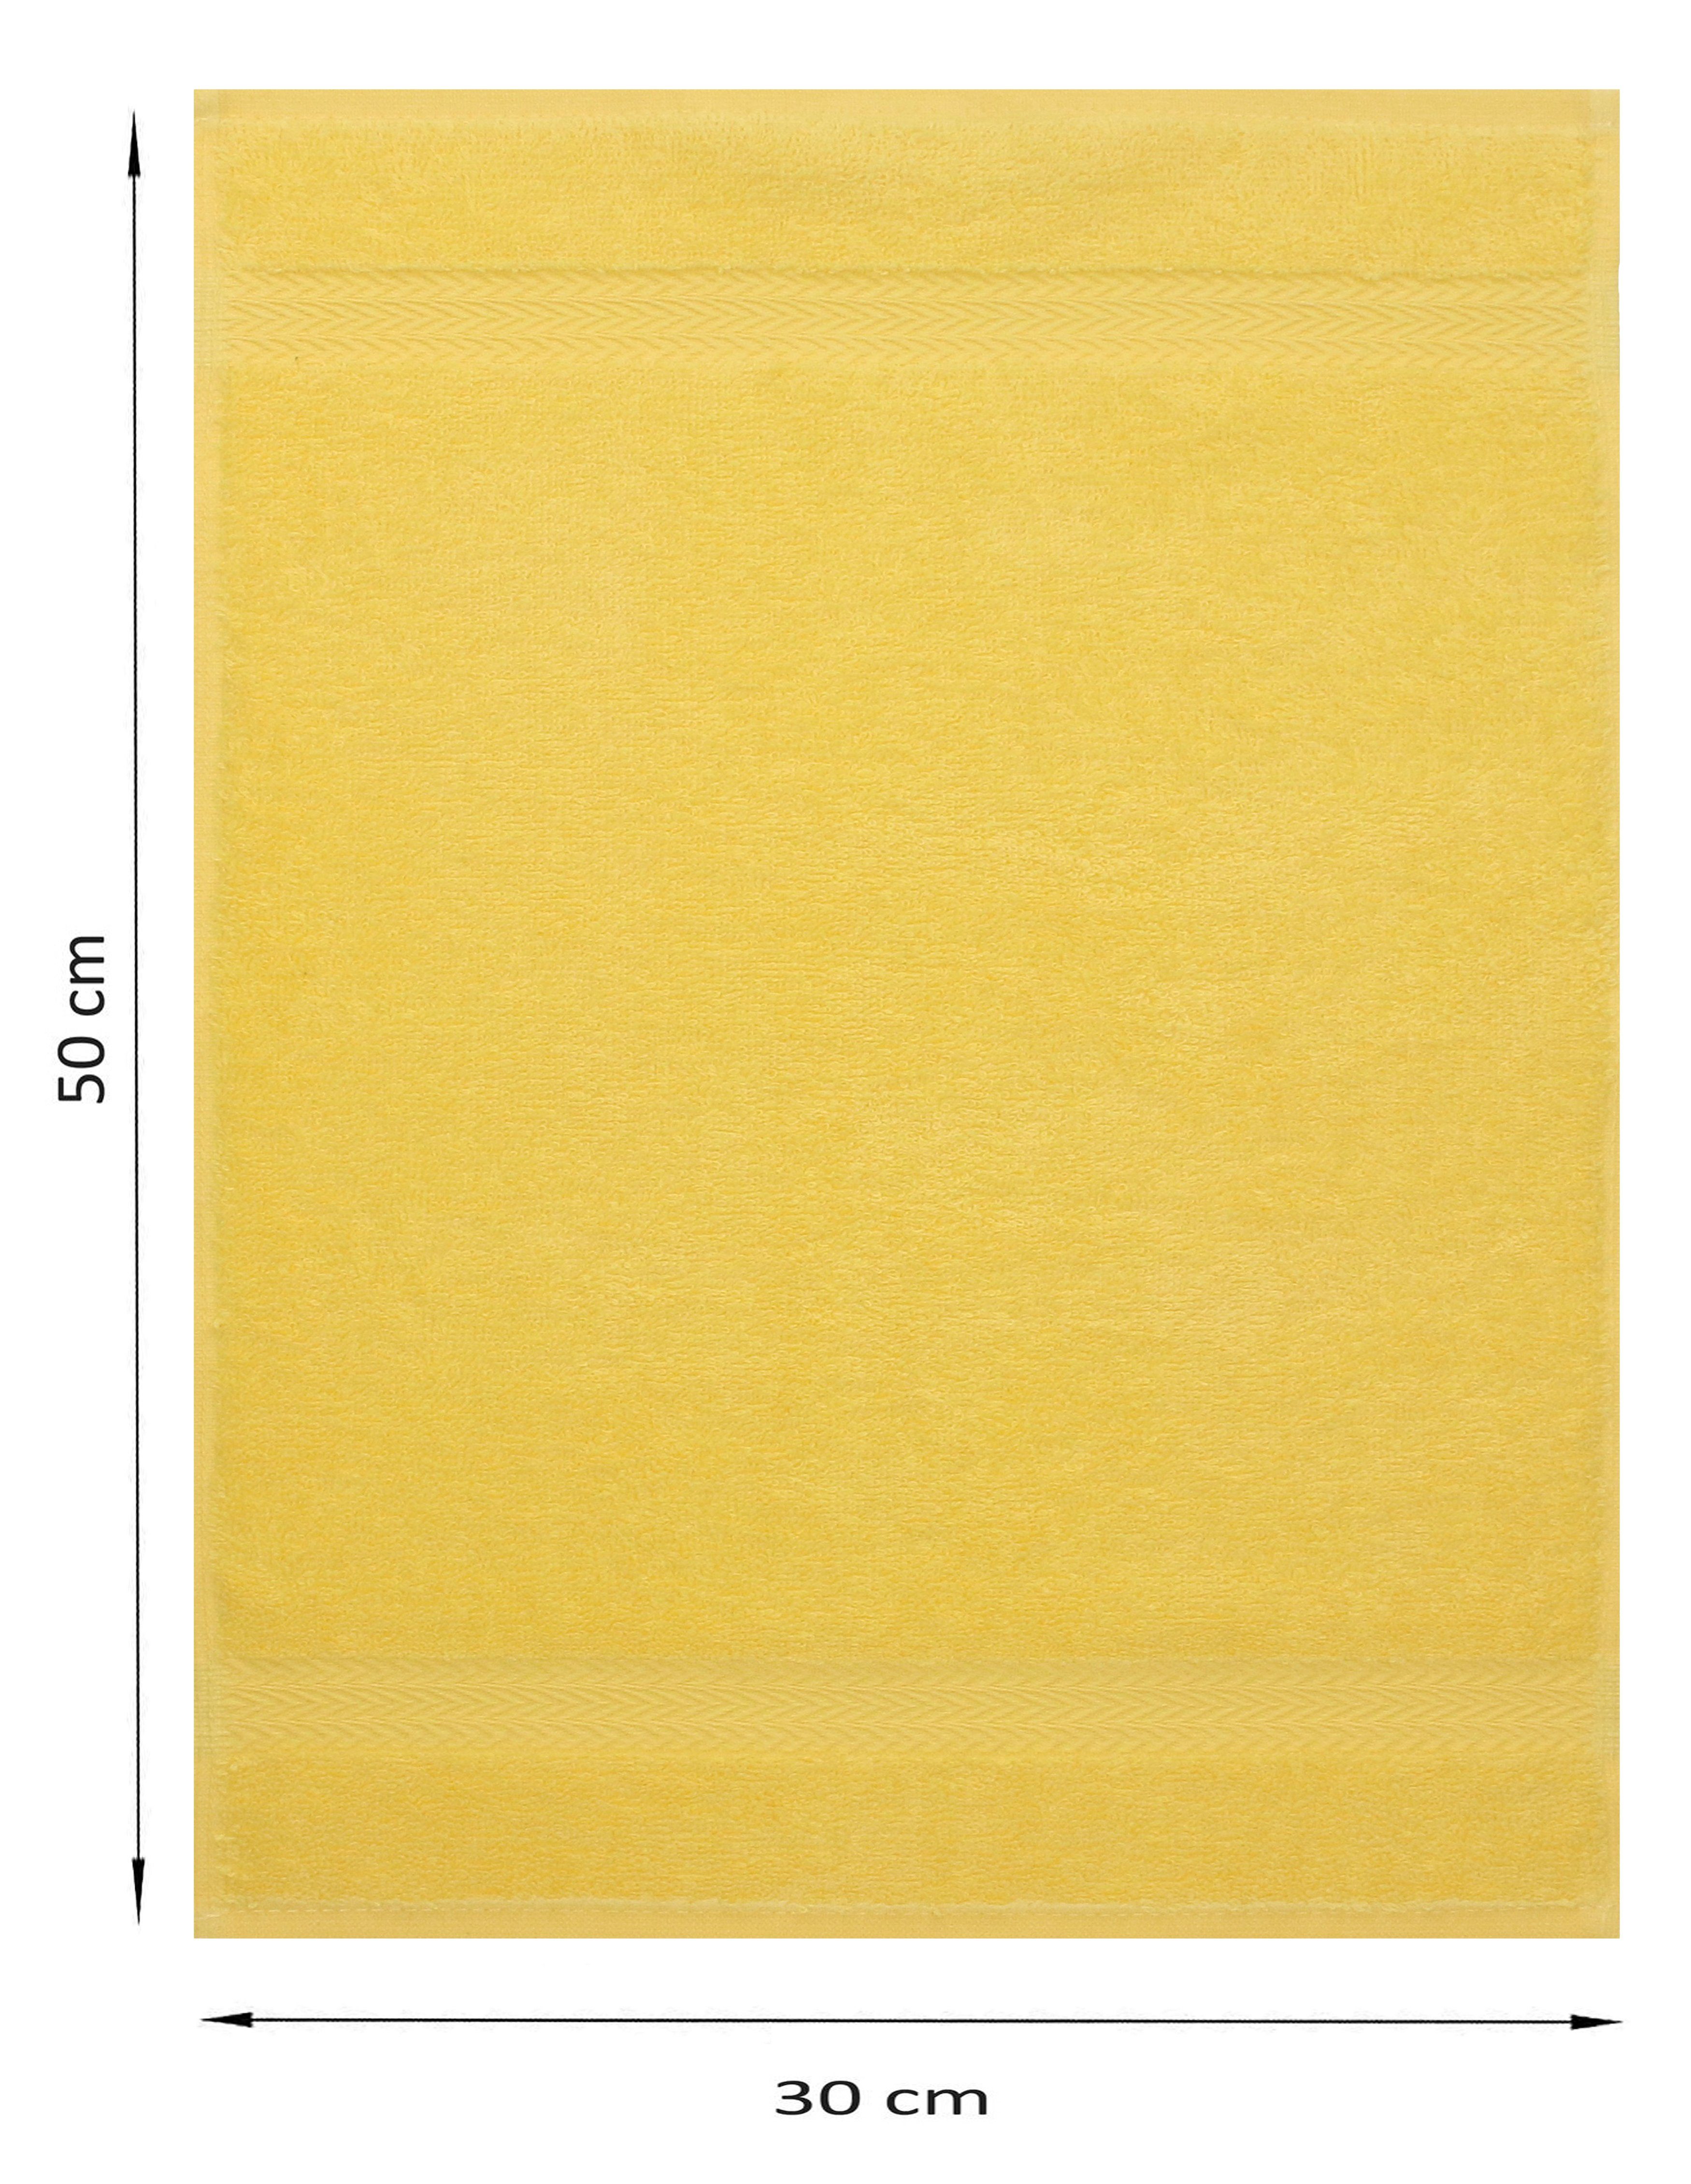 Stück Gästetuch-Set Gästehandtücher cm Buaumwolle gelb 30x50 Gästehandtücher 100% 100% Betz und 10 Premium dunkelblau, Baumwolle Farbe